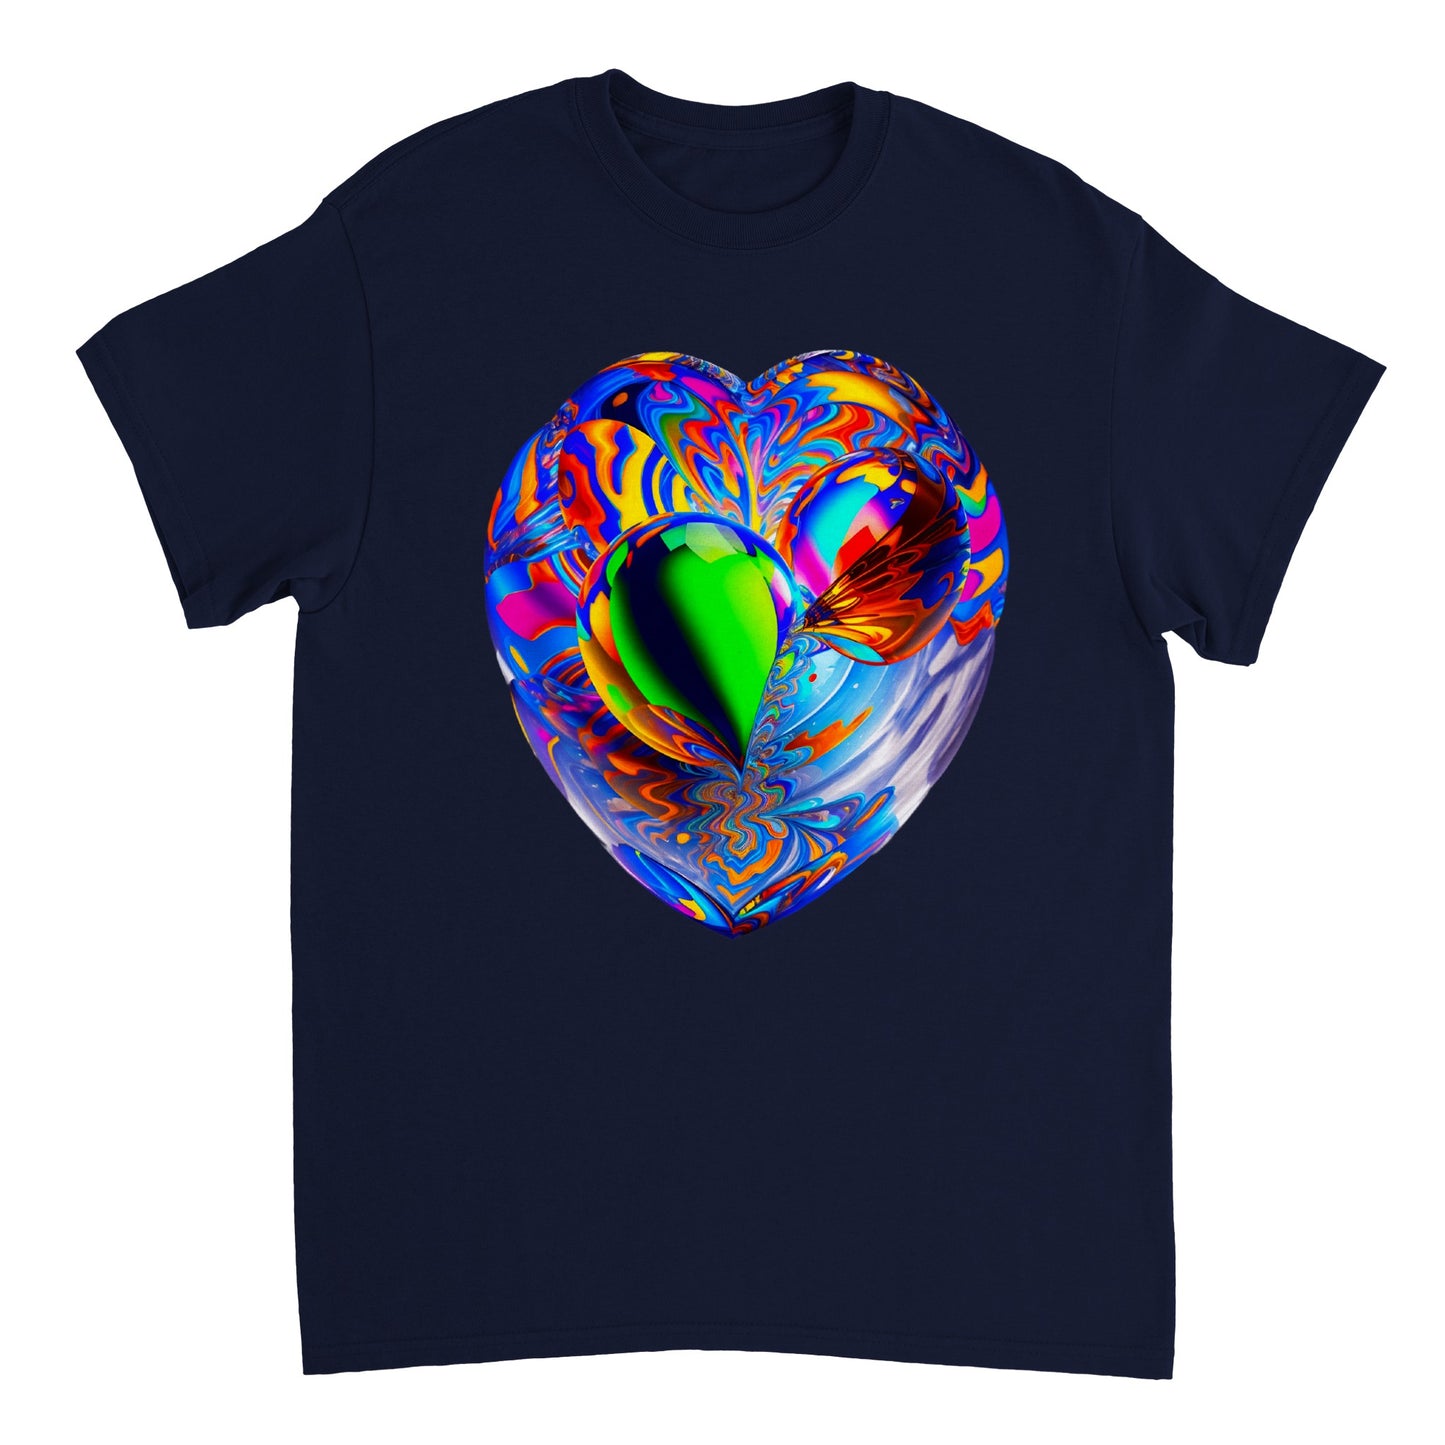 Love Heart - Heavyweight Unisex Crewneck T-shirt 6